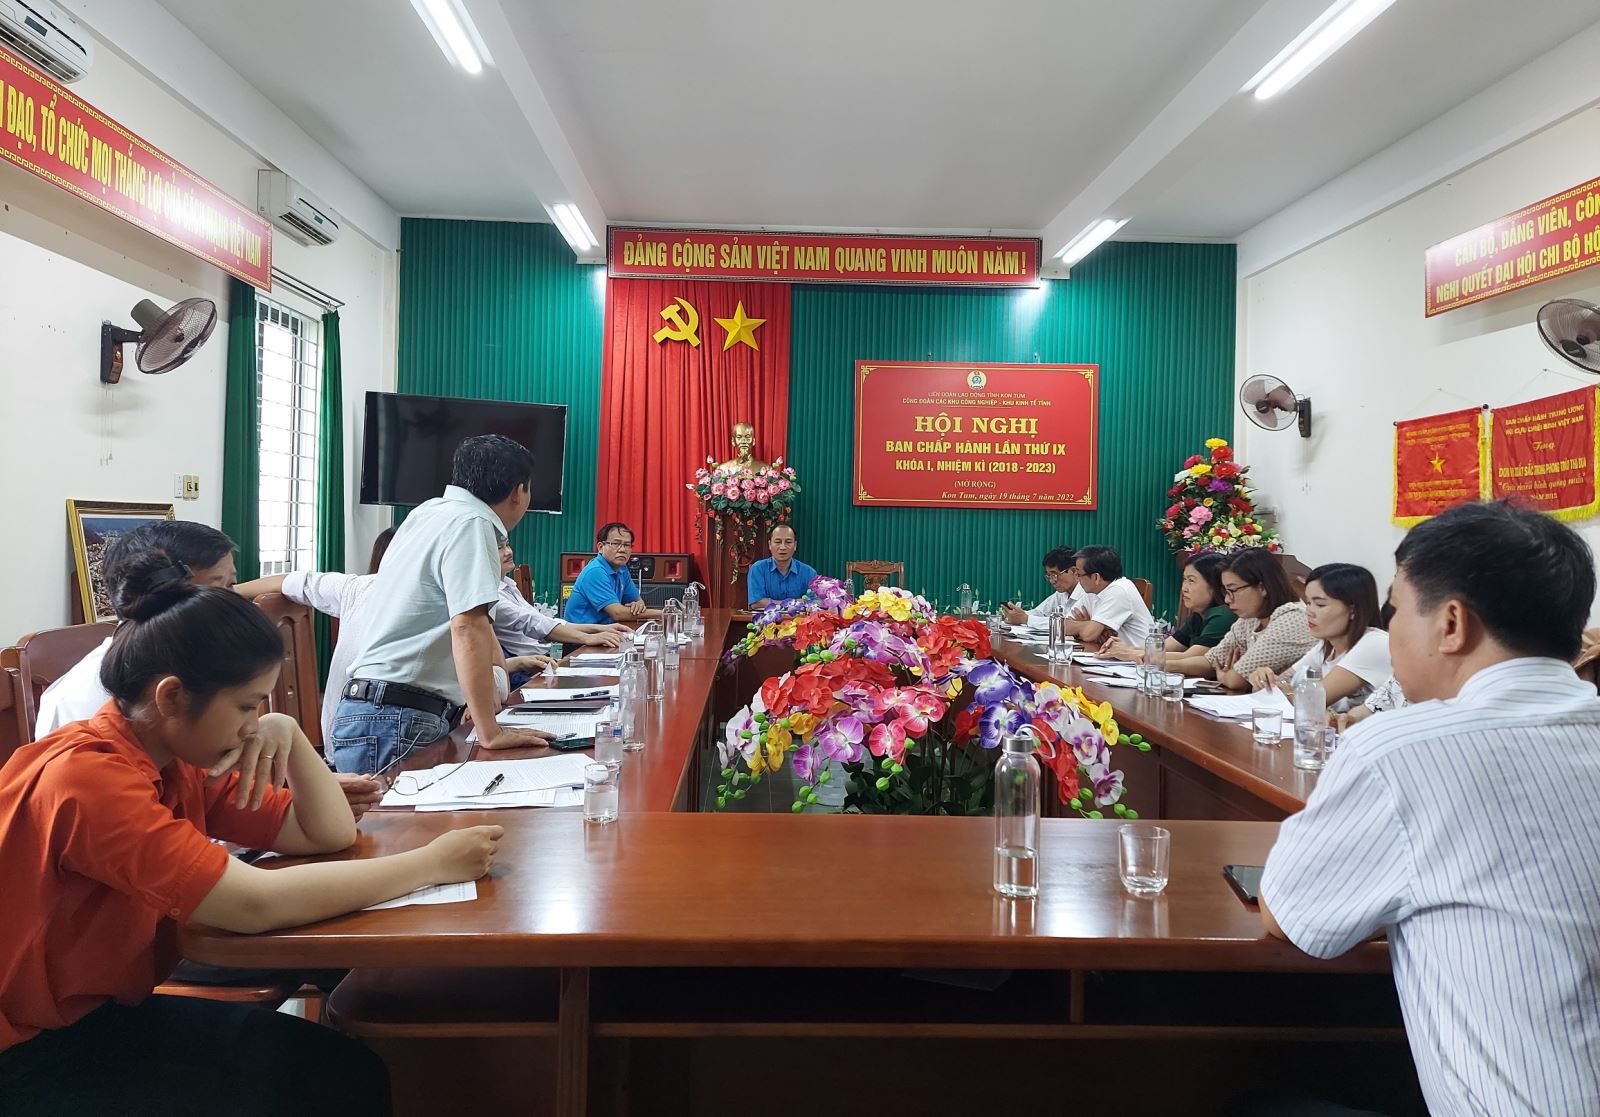 Hội nghị Ban chấp hành Công đoàn các KCN-KKT tỉnh lần thứ 9, nhiệm kỳ 2018-2023